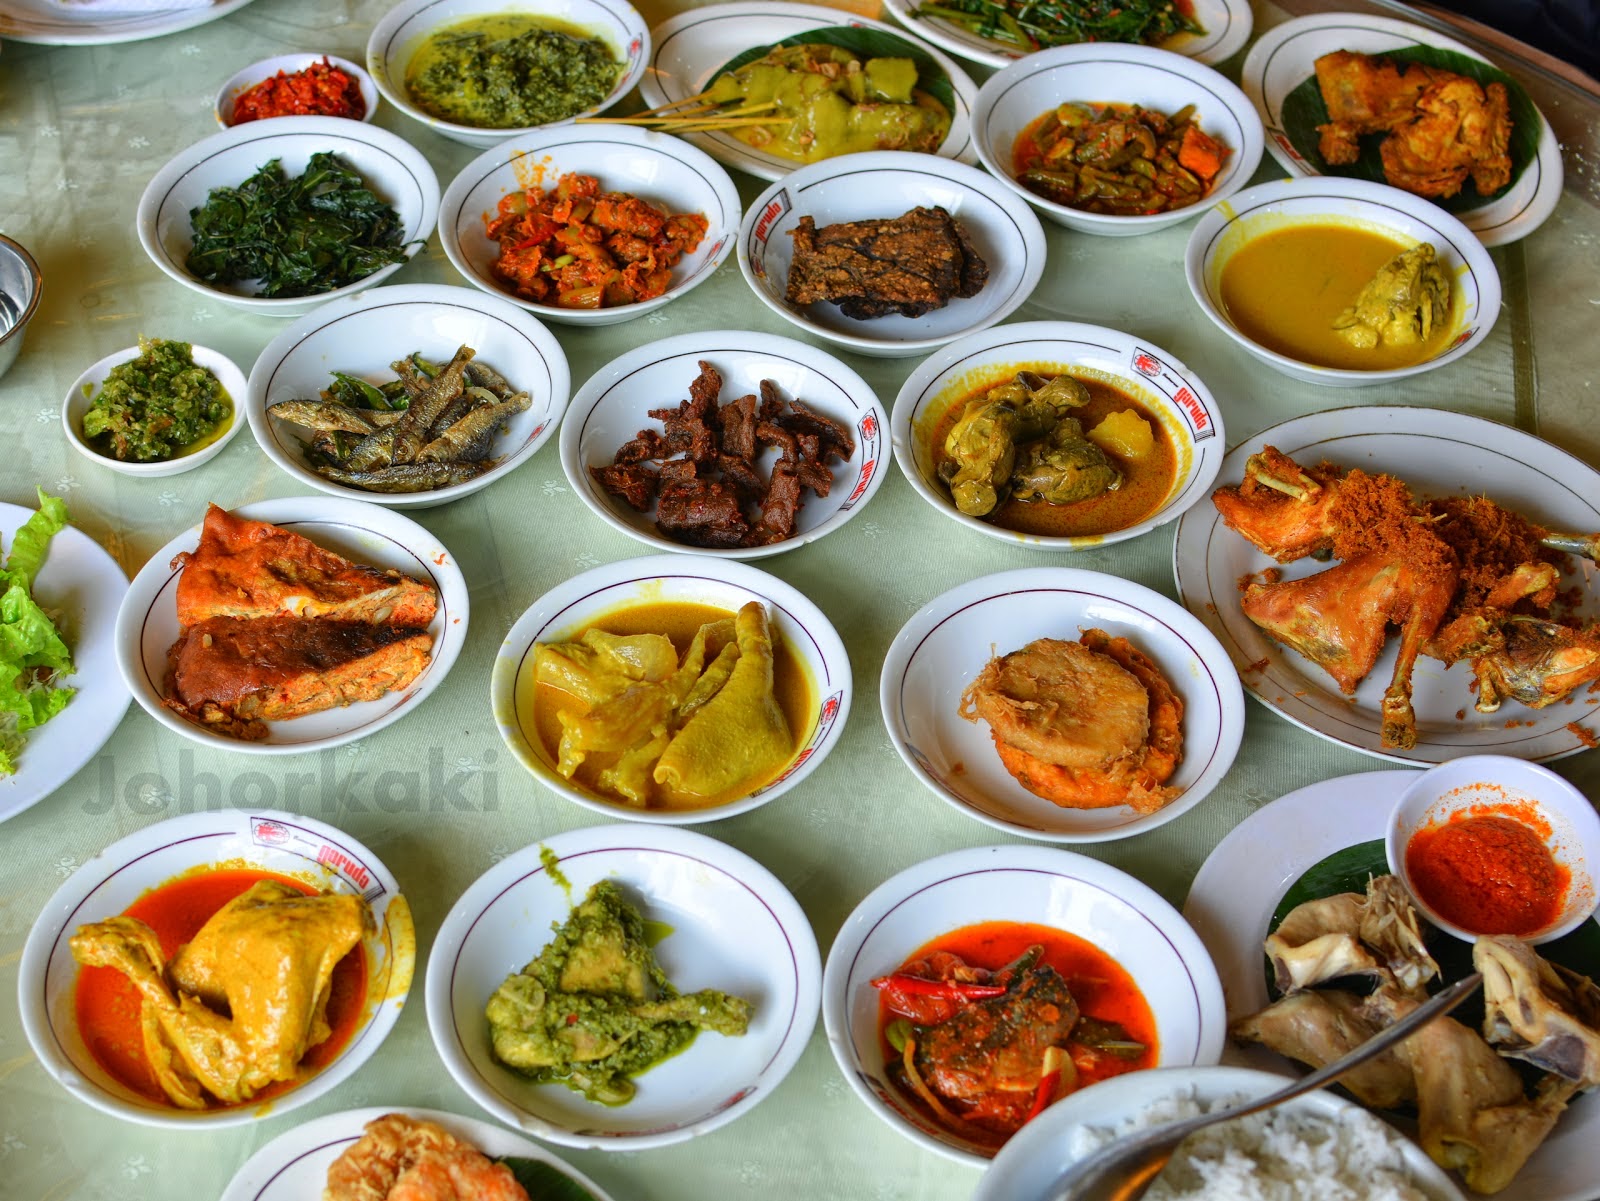 Ayam Goreng Lado Ijo khas Minang atau Sumatra Barat menjadi salah satu kuliner khas rumah makan padang atau kapau